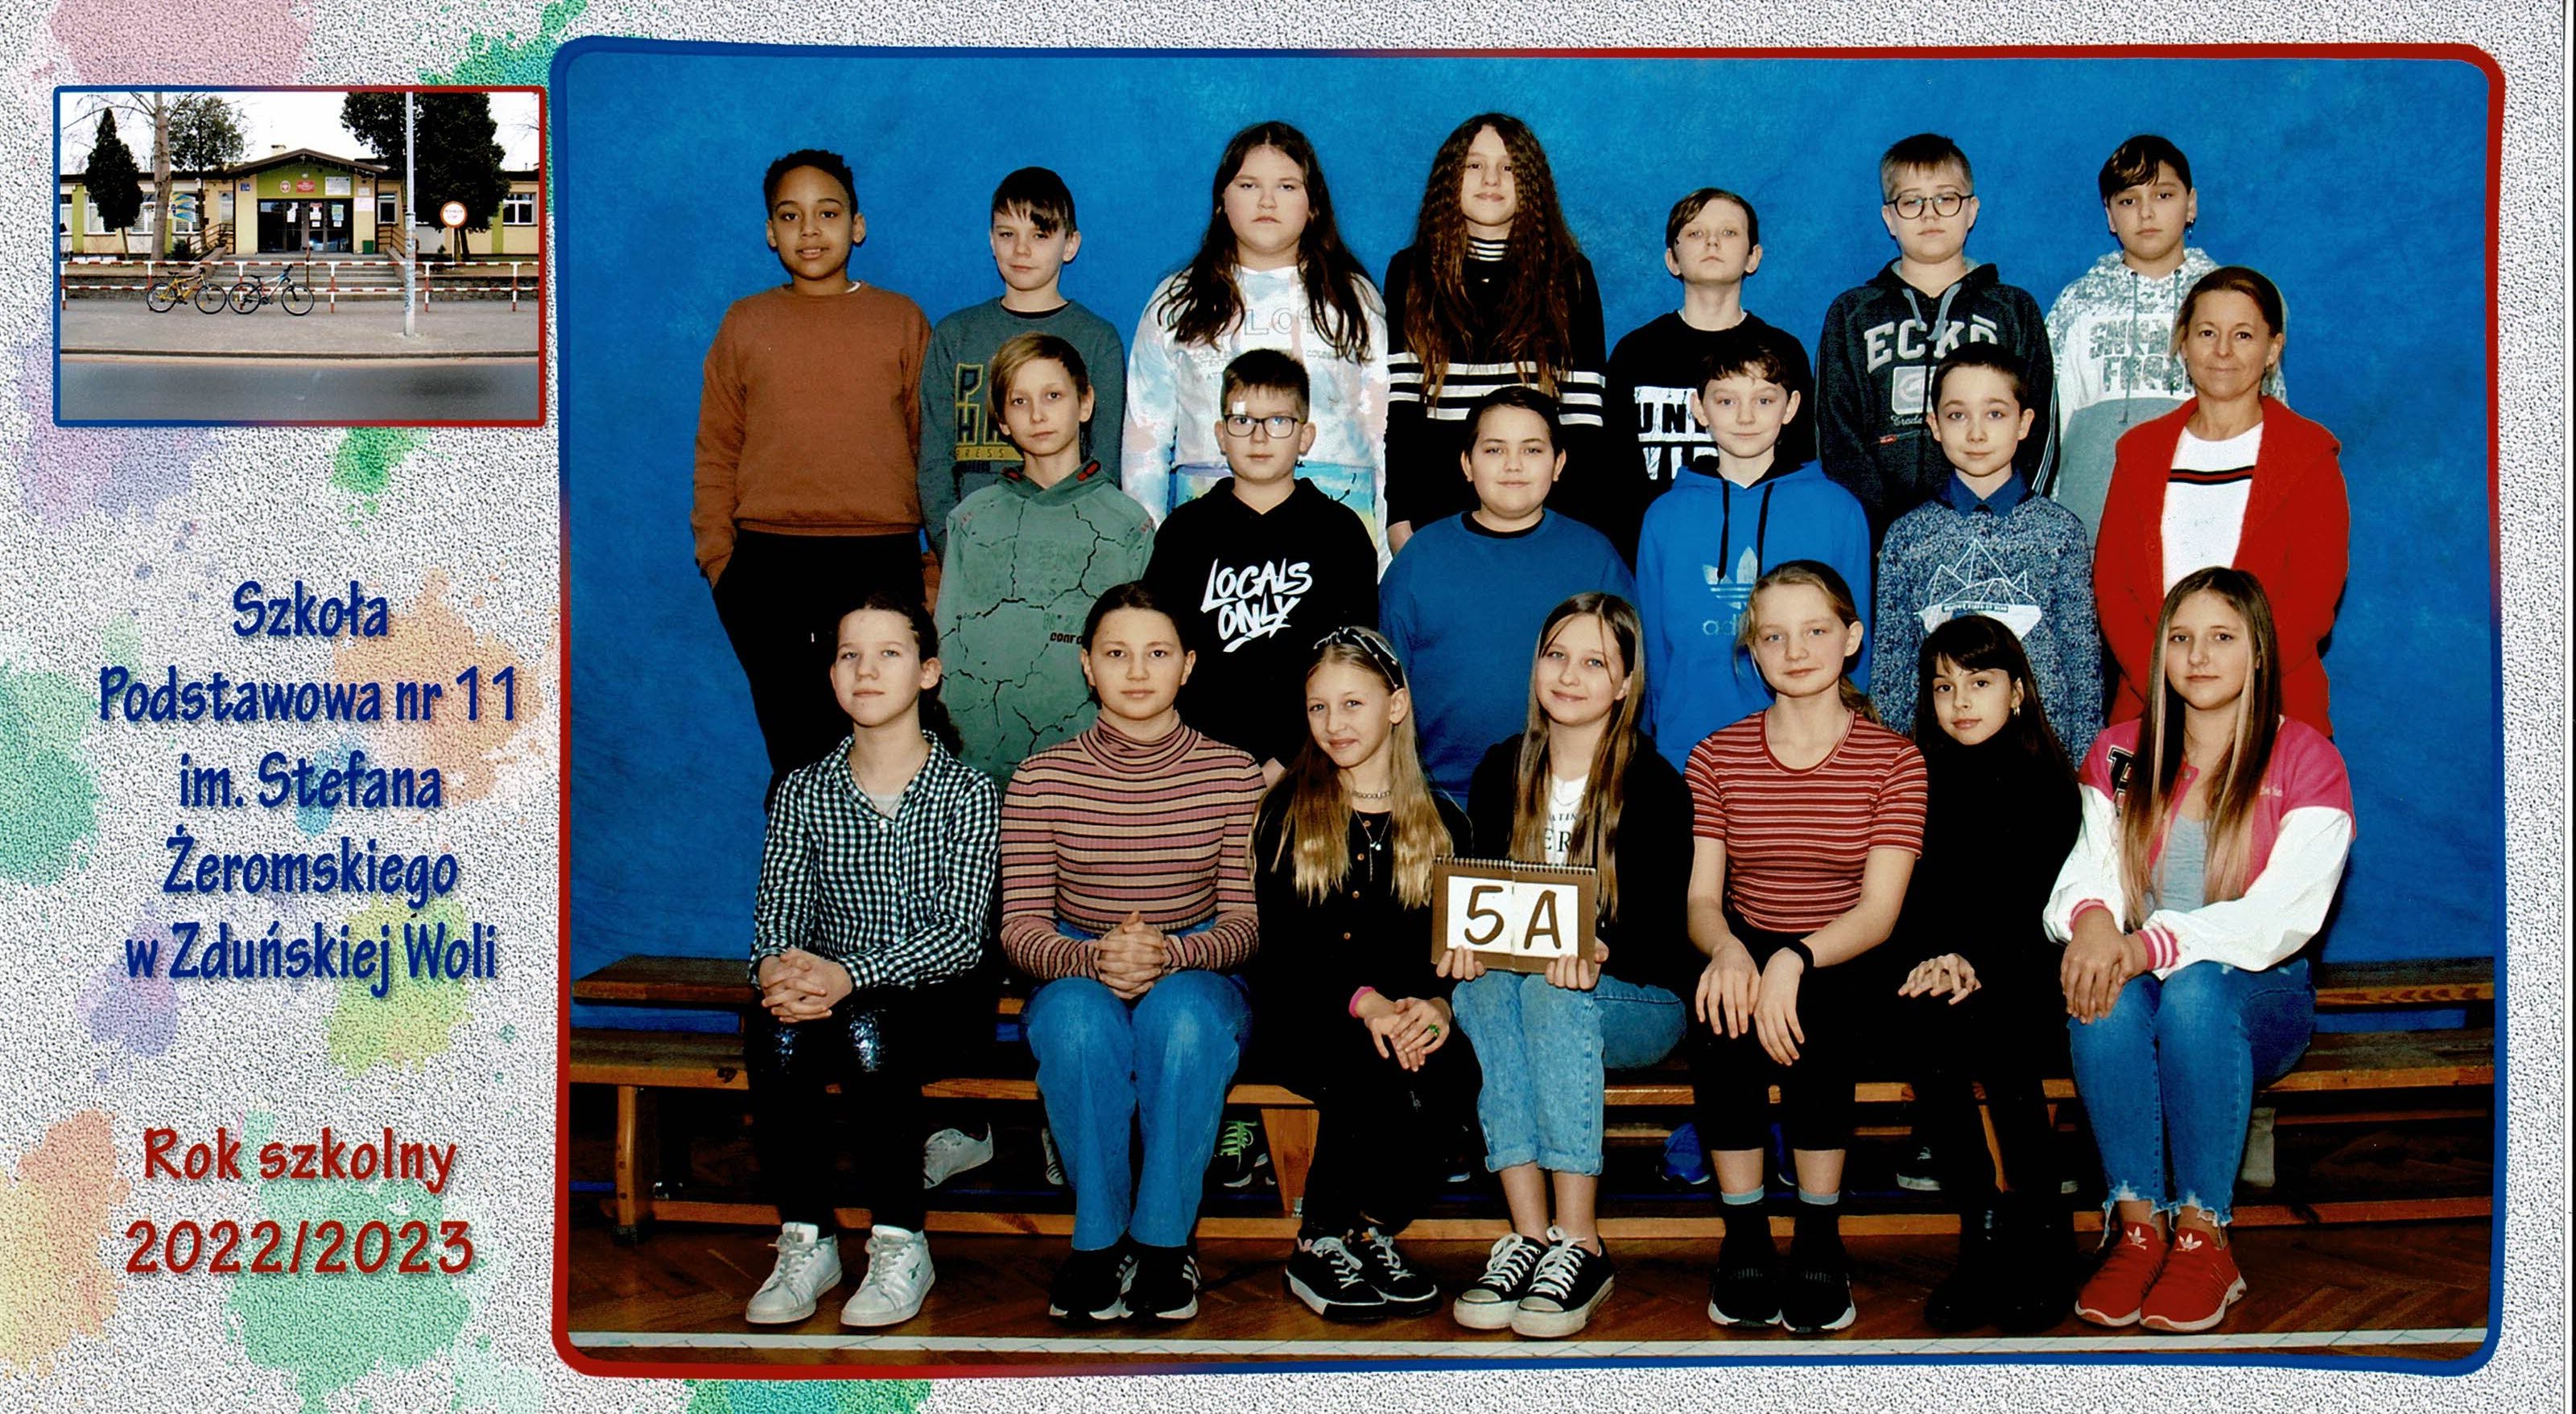 Uczniowie klasy 5A, dziewczynki i chłopcy siedzący na ławce z tabliczką "klasa 5a"